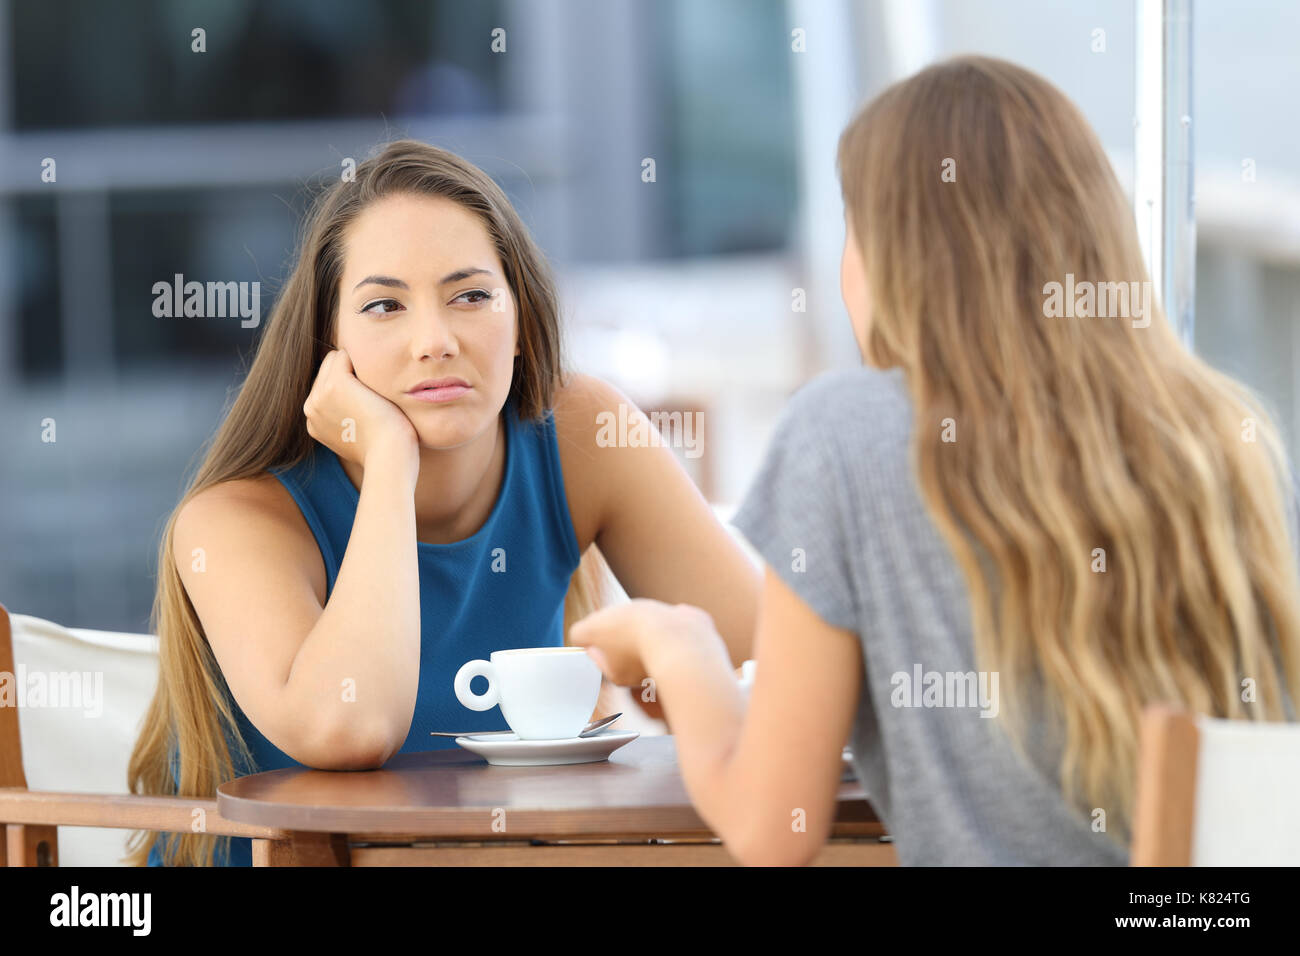 Bored girl écouter une conversation mal assis sur une terrasse de restaurant Banque D'Images